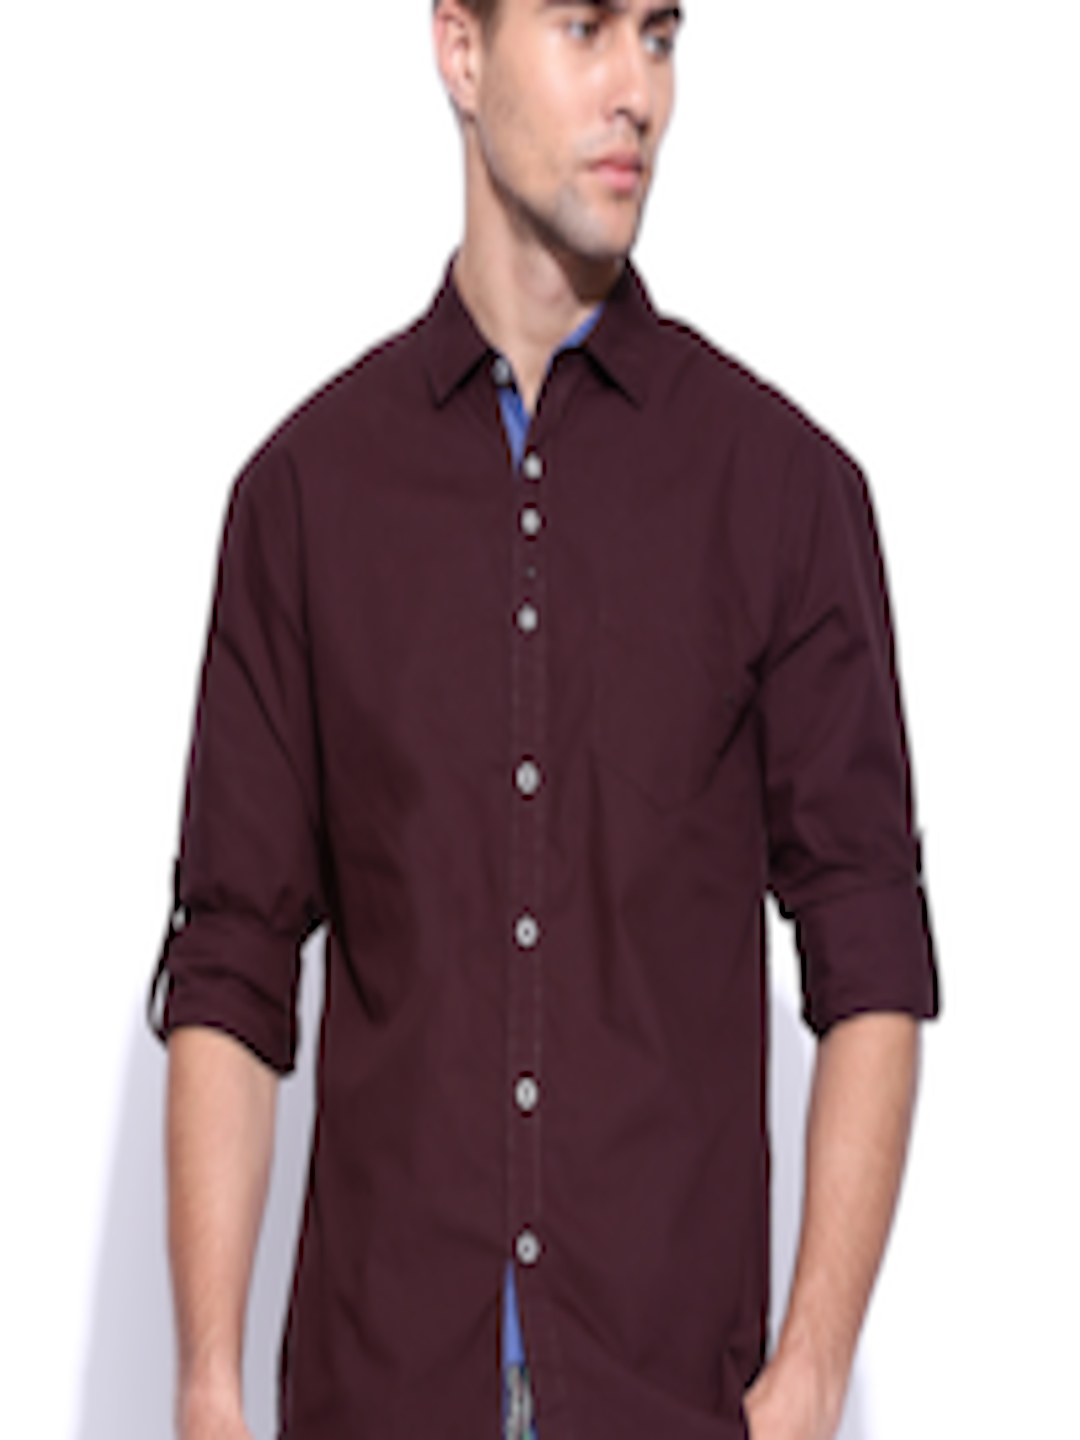 Buy The Indian Garage Co. Men Burgundy Casual Shirt - Shirts for Men ...